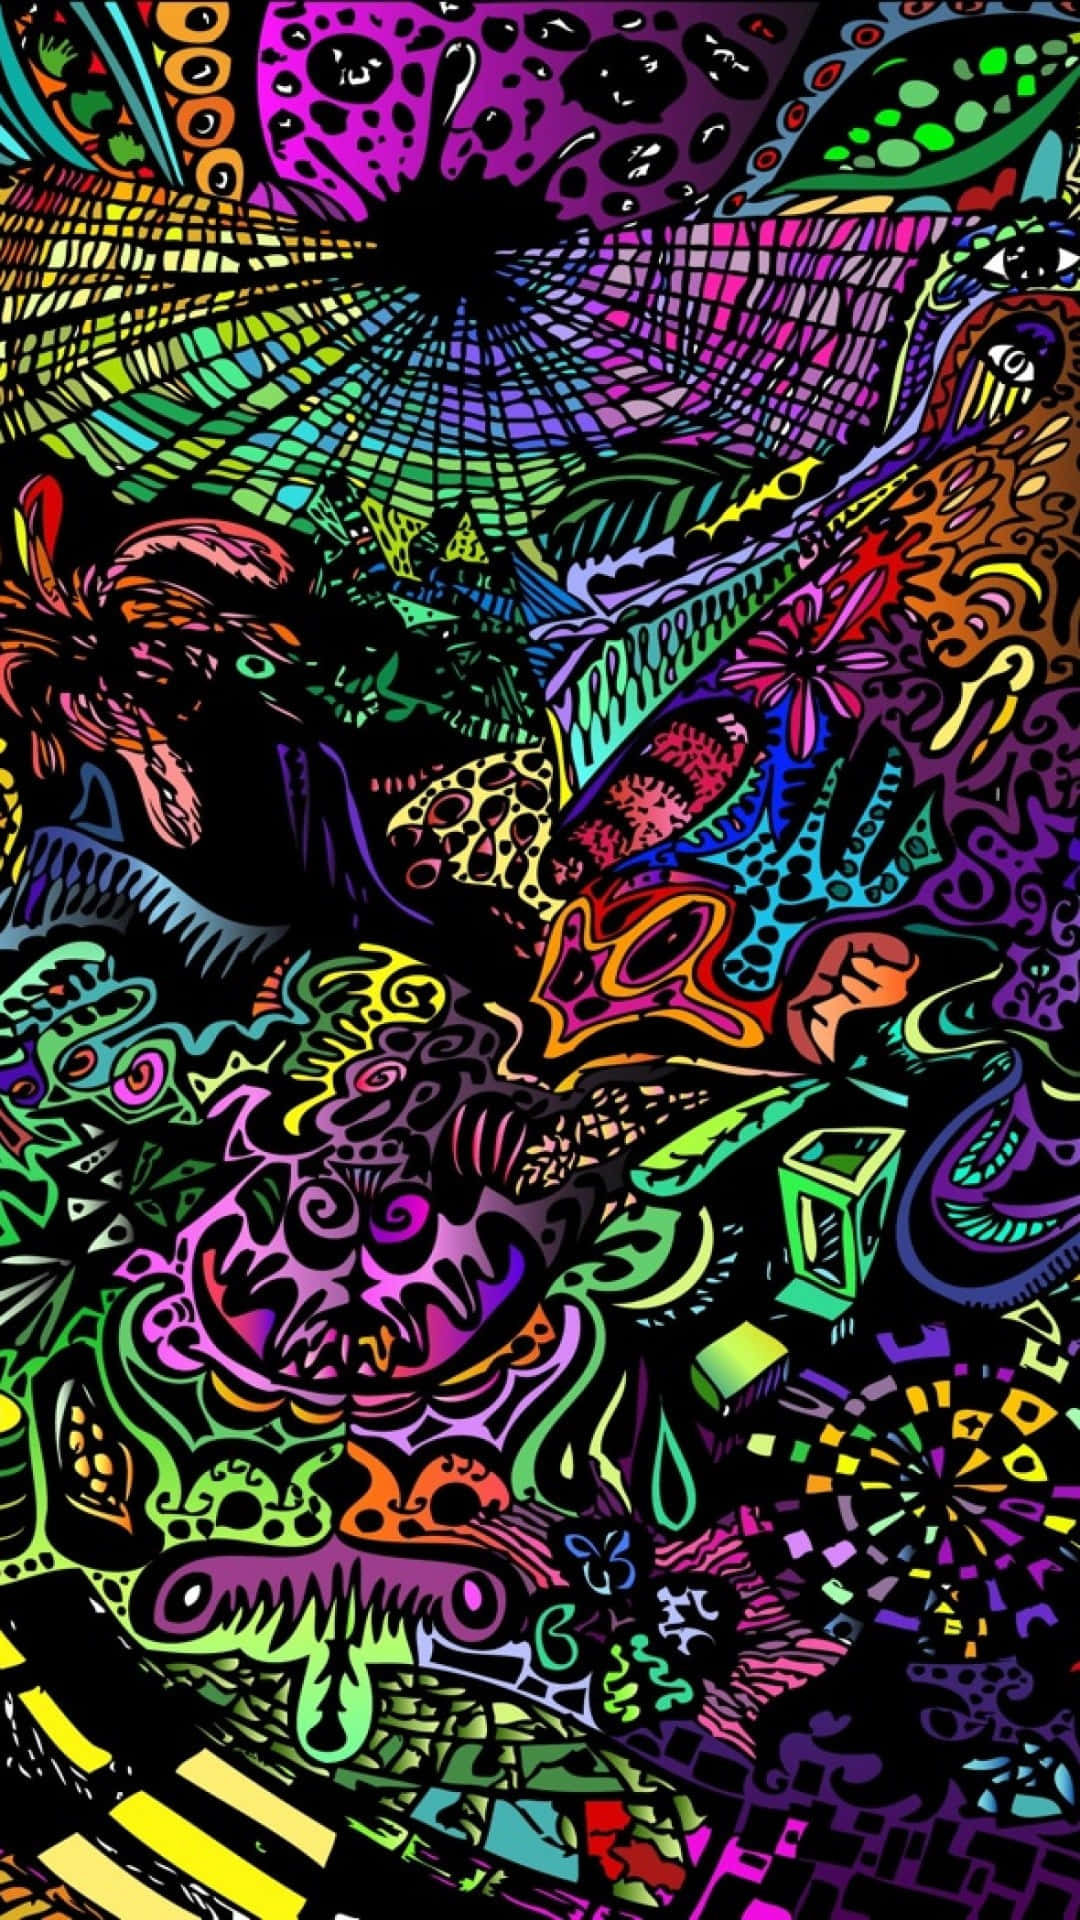 Einlebendiges, Farbenfrohes Und Visuell Atemberaubendes Trippy-hippie-kunstwerk. Wallpaper